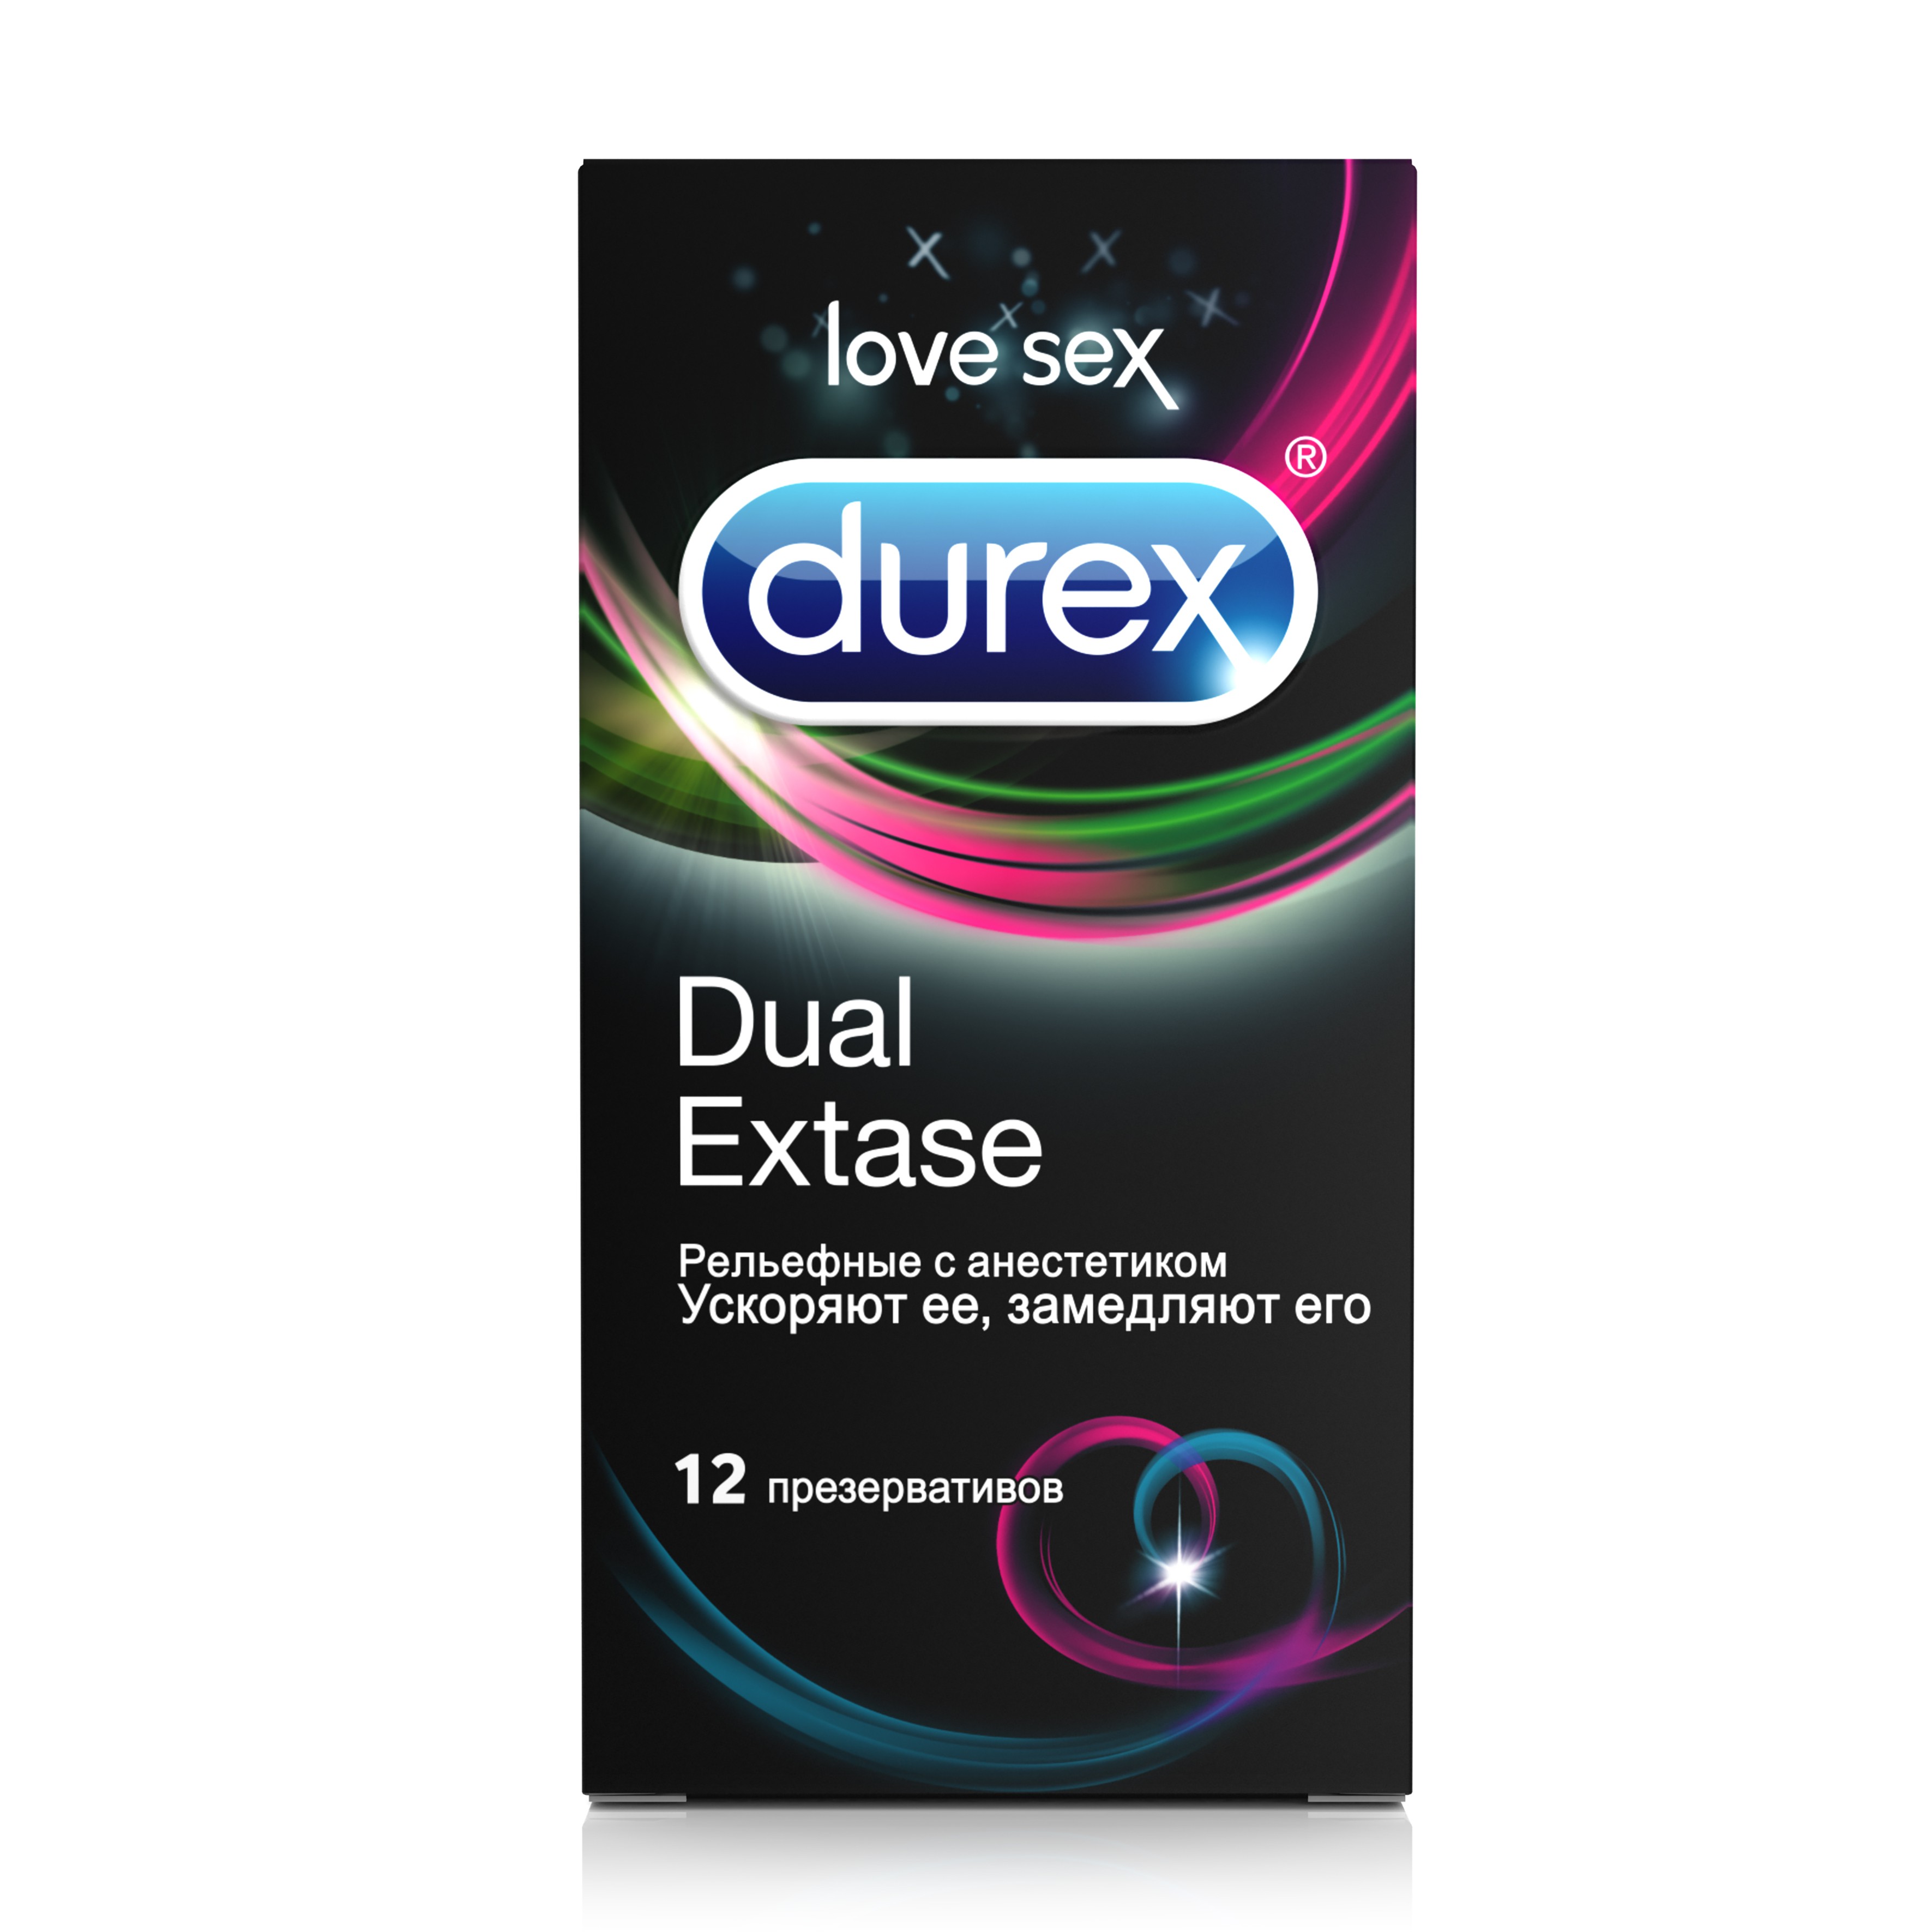 Дюрекс презервативы из натурального латекса Инвизибл Экстра Луб №3